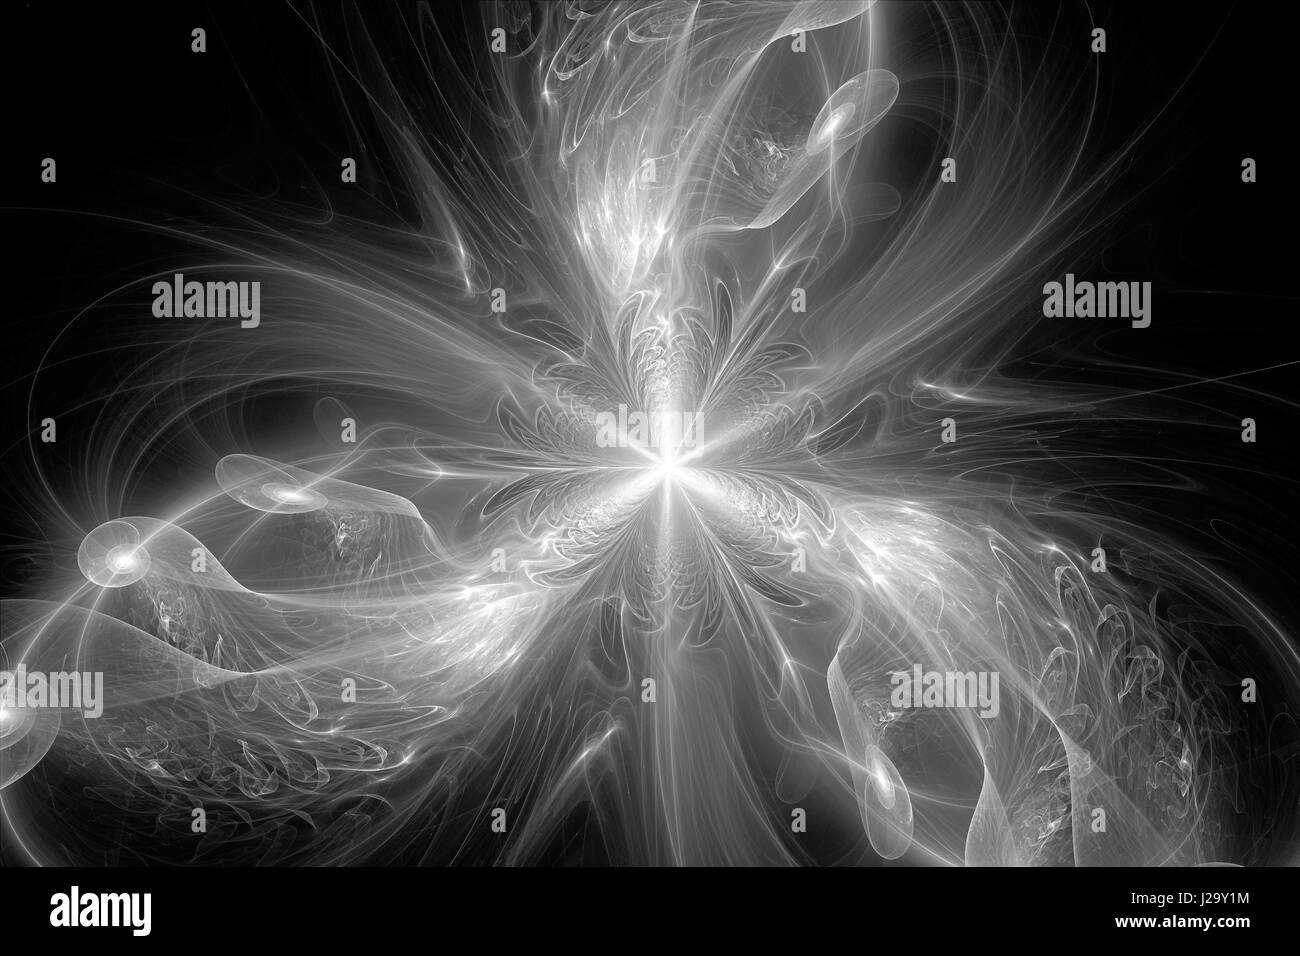 Drei bewaffnete Fraktale mit Spiralen, schwarz und weiß, computergenerierten abstrakten Hintergrund, 3D rendering Stockfoto